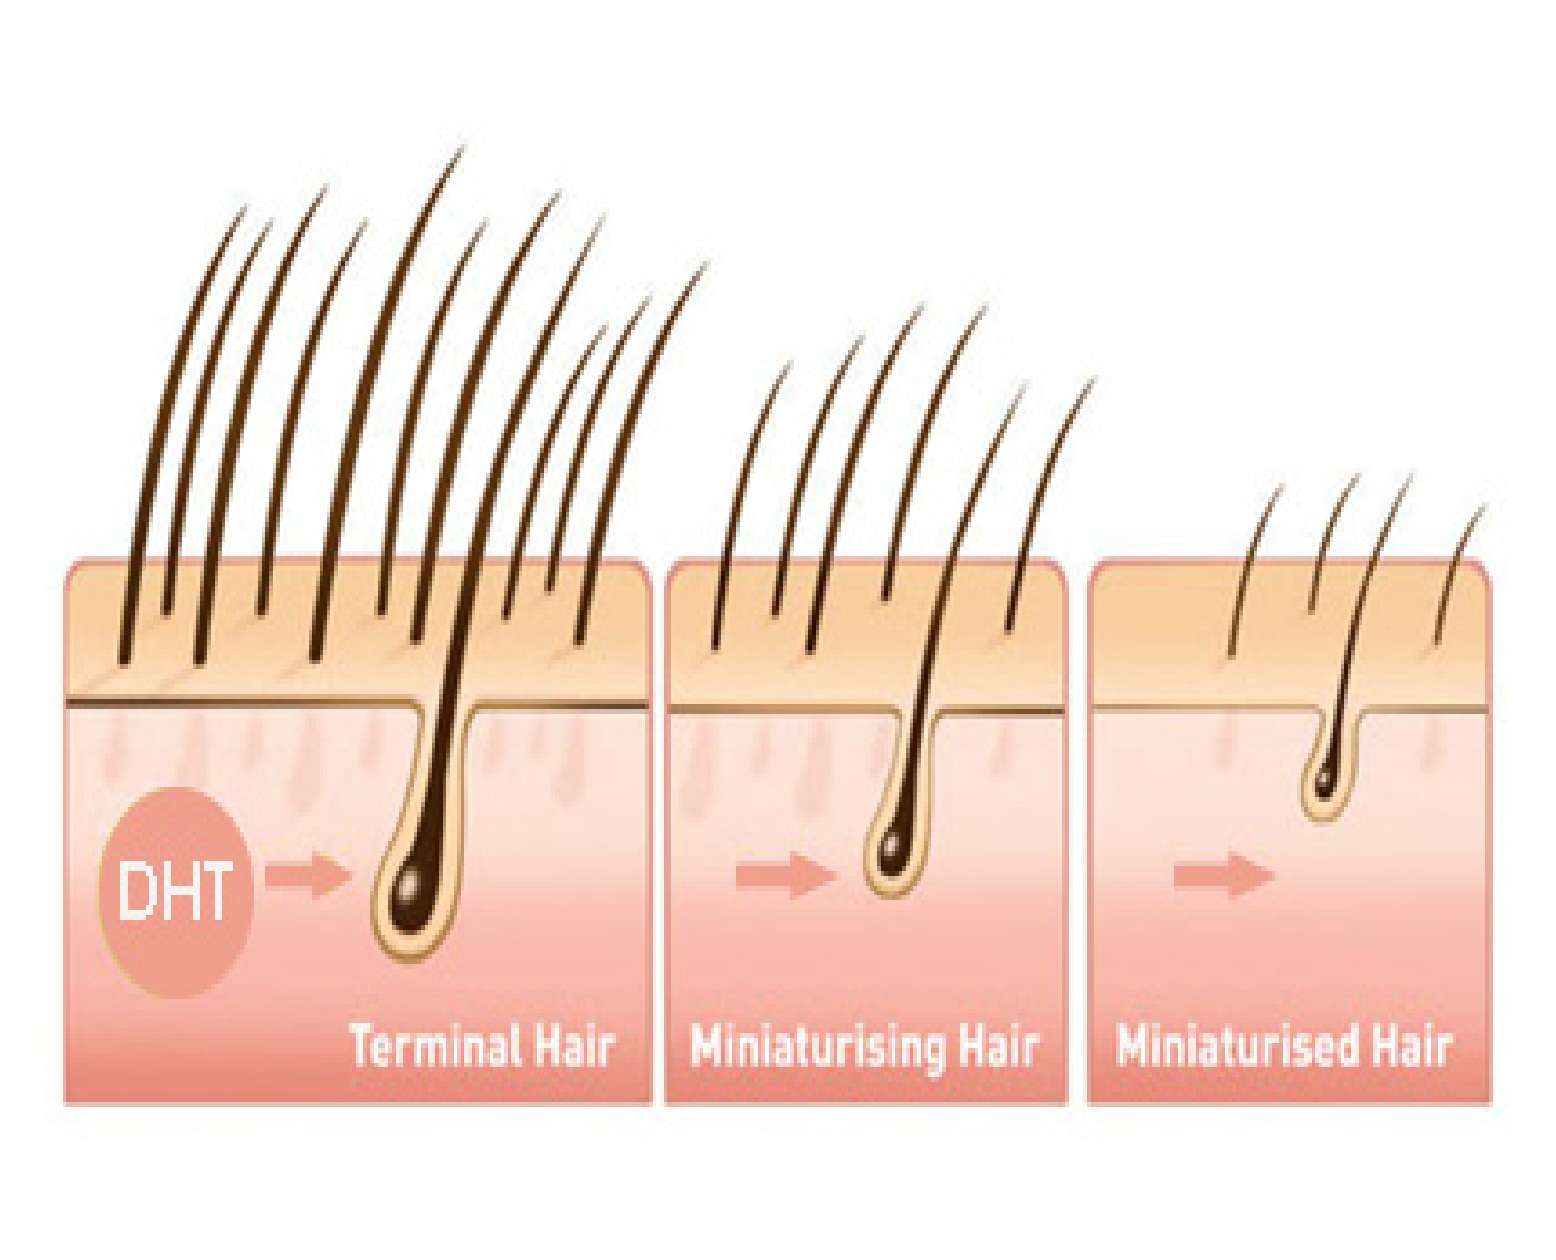 DHT and hair loss